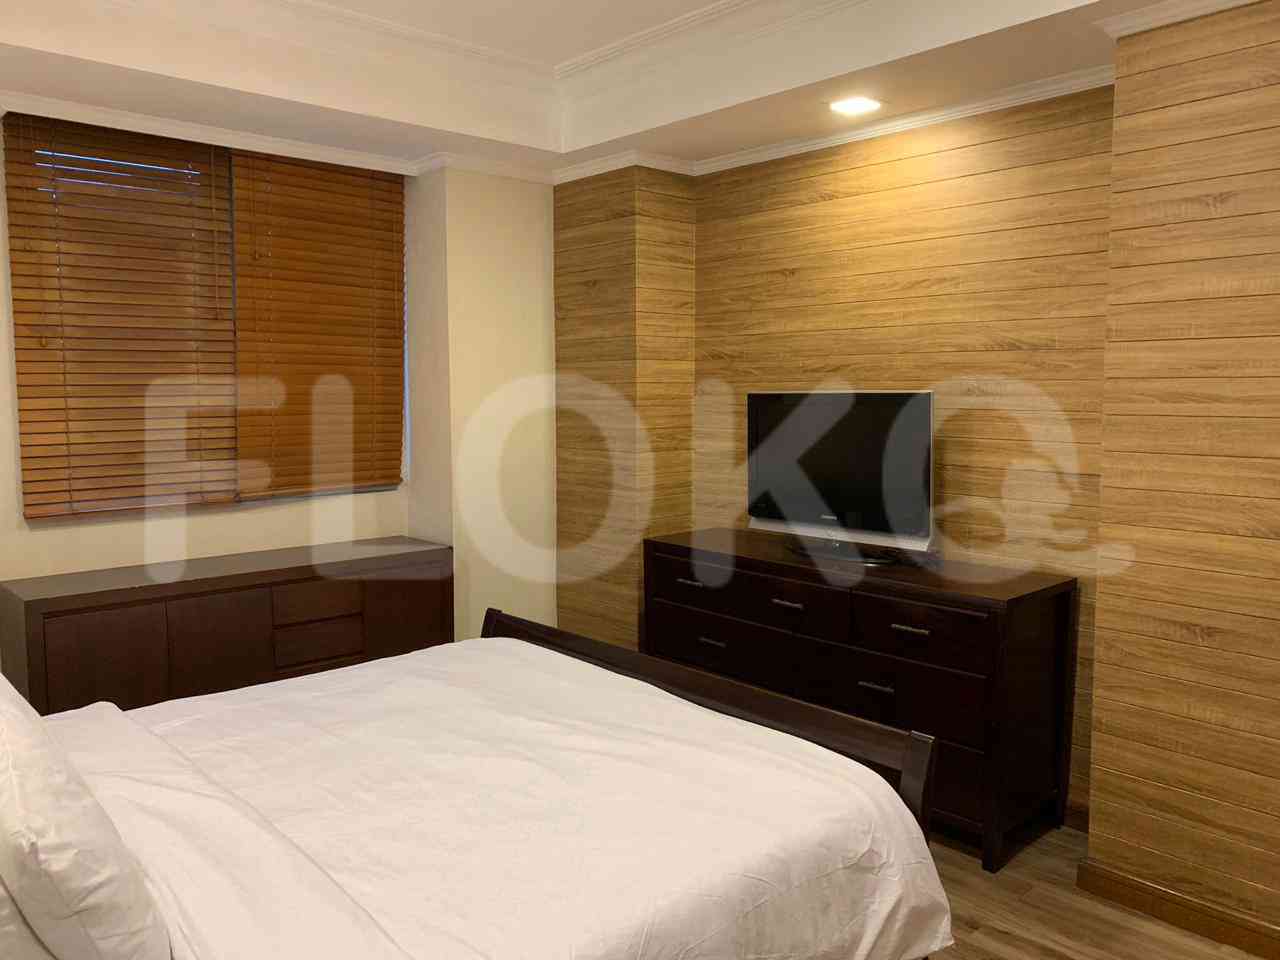 4 Bedroom on 10th Floor for Rent in Puri Imperium Apartment - fkua44 2